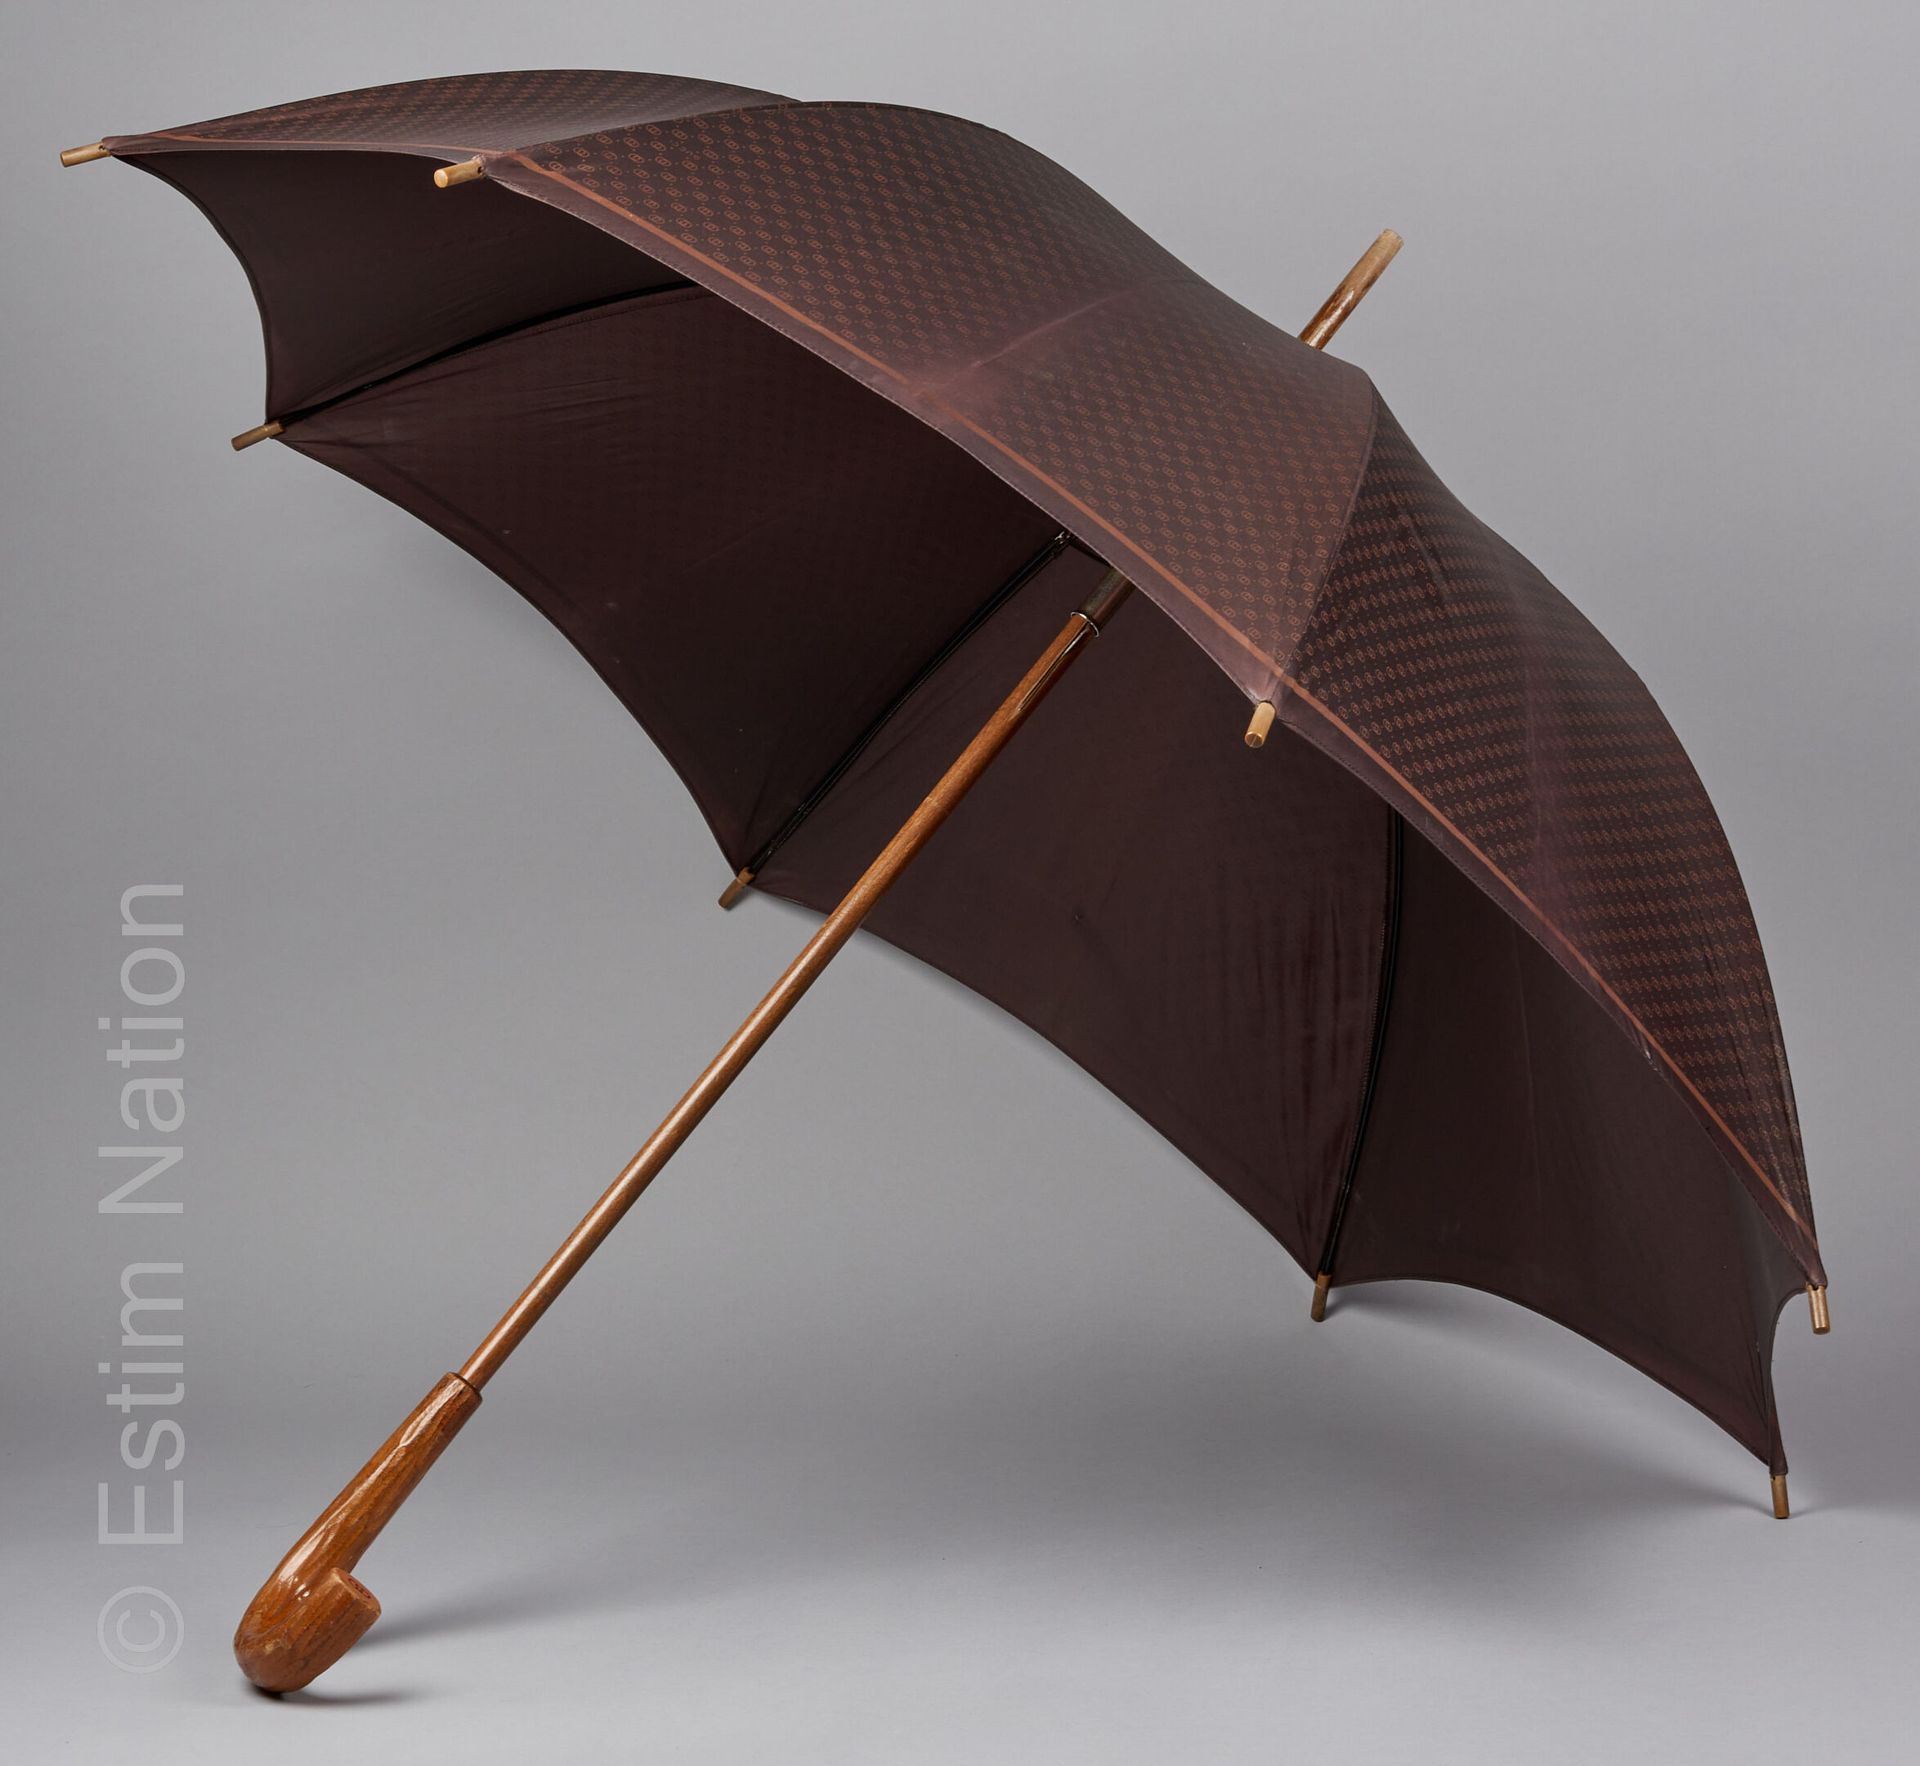 Sold at Auction: Vintage Louis Vuitton Monogram Umbrella